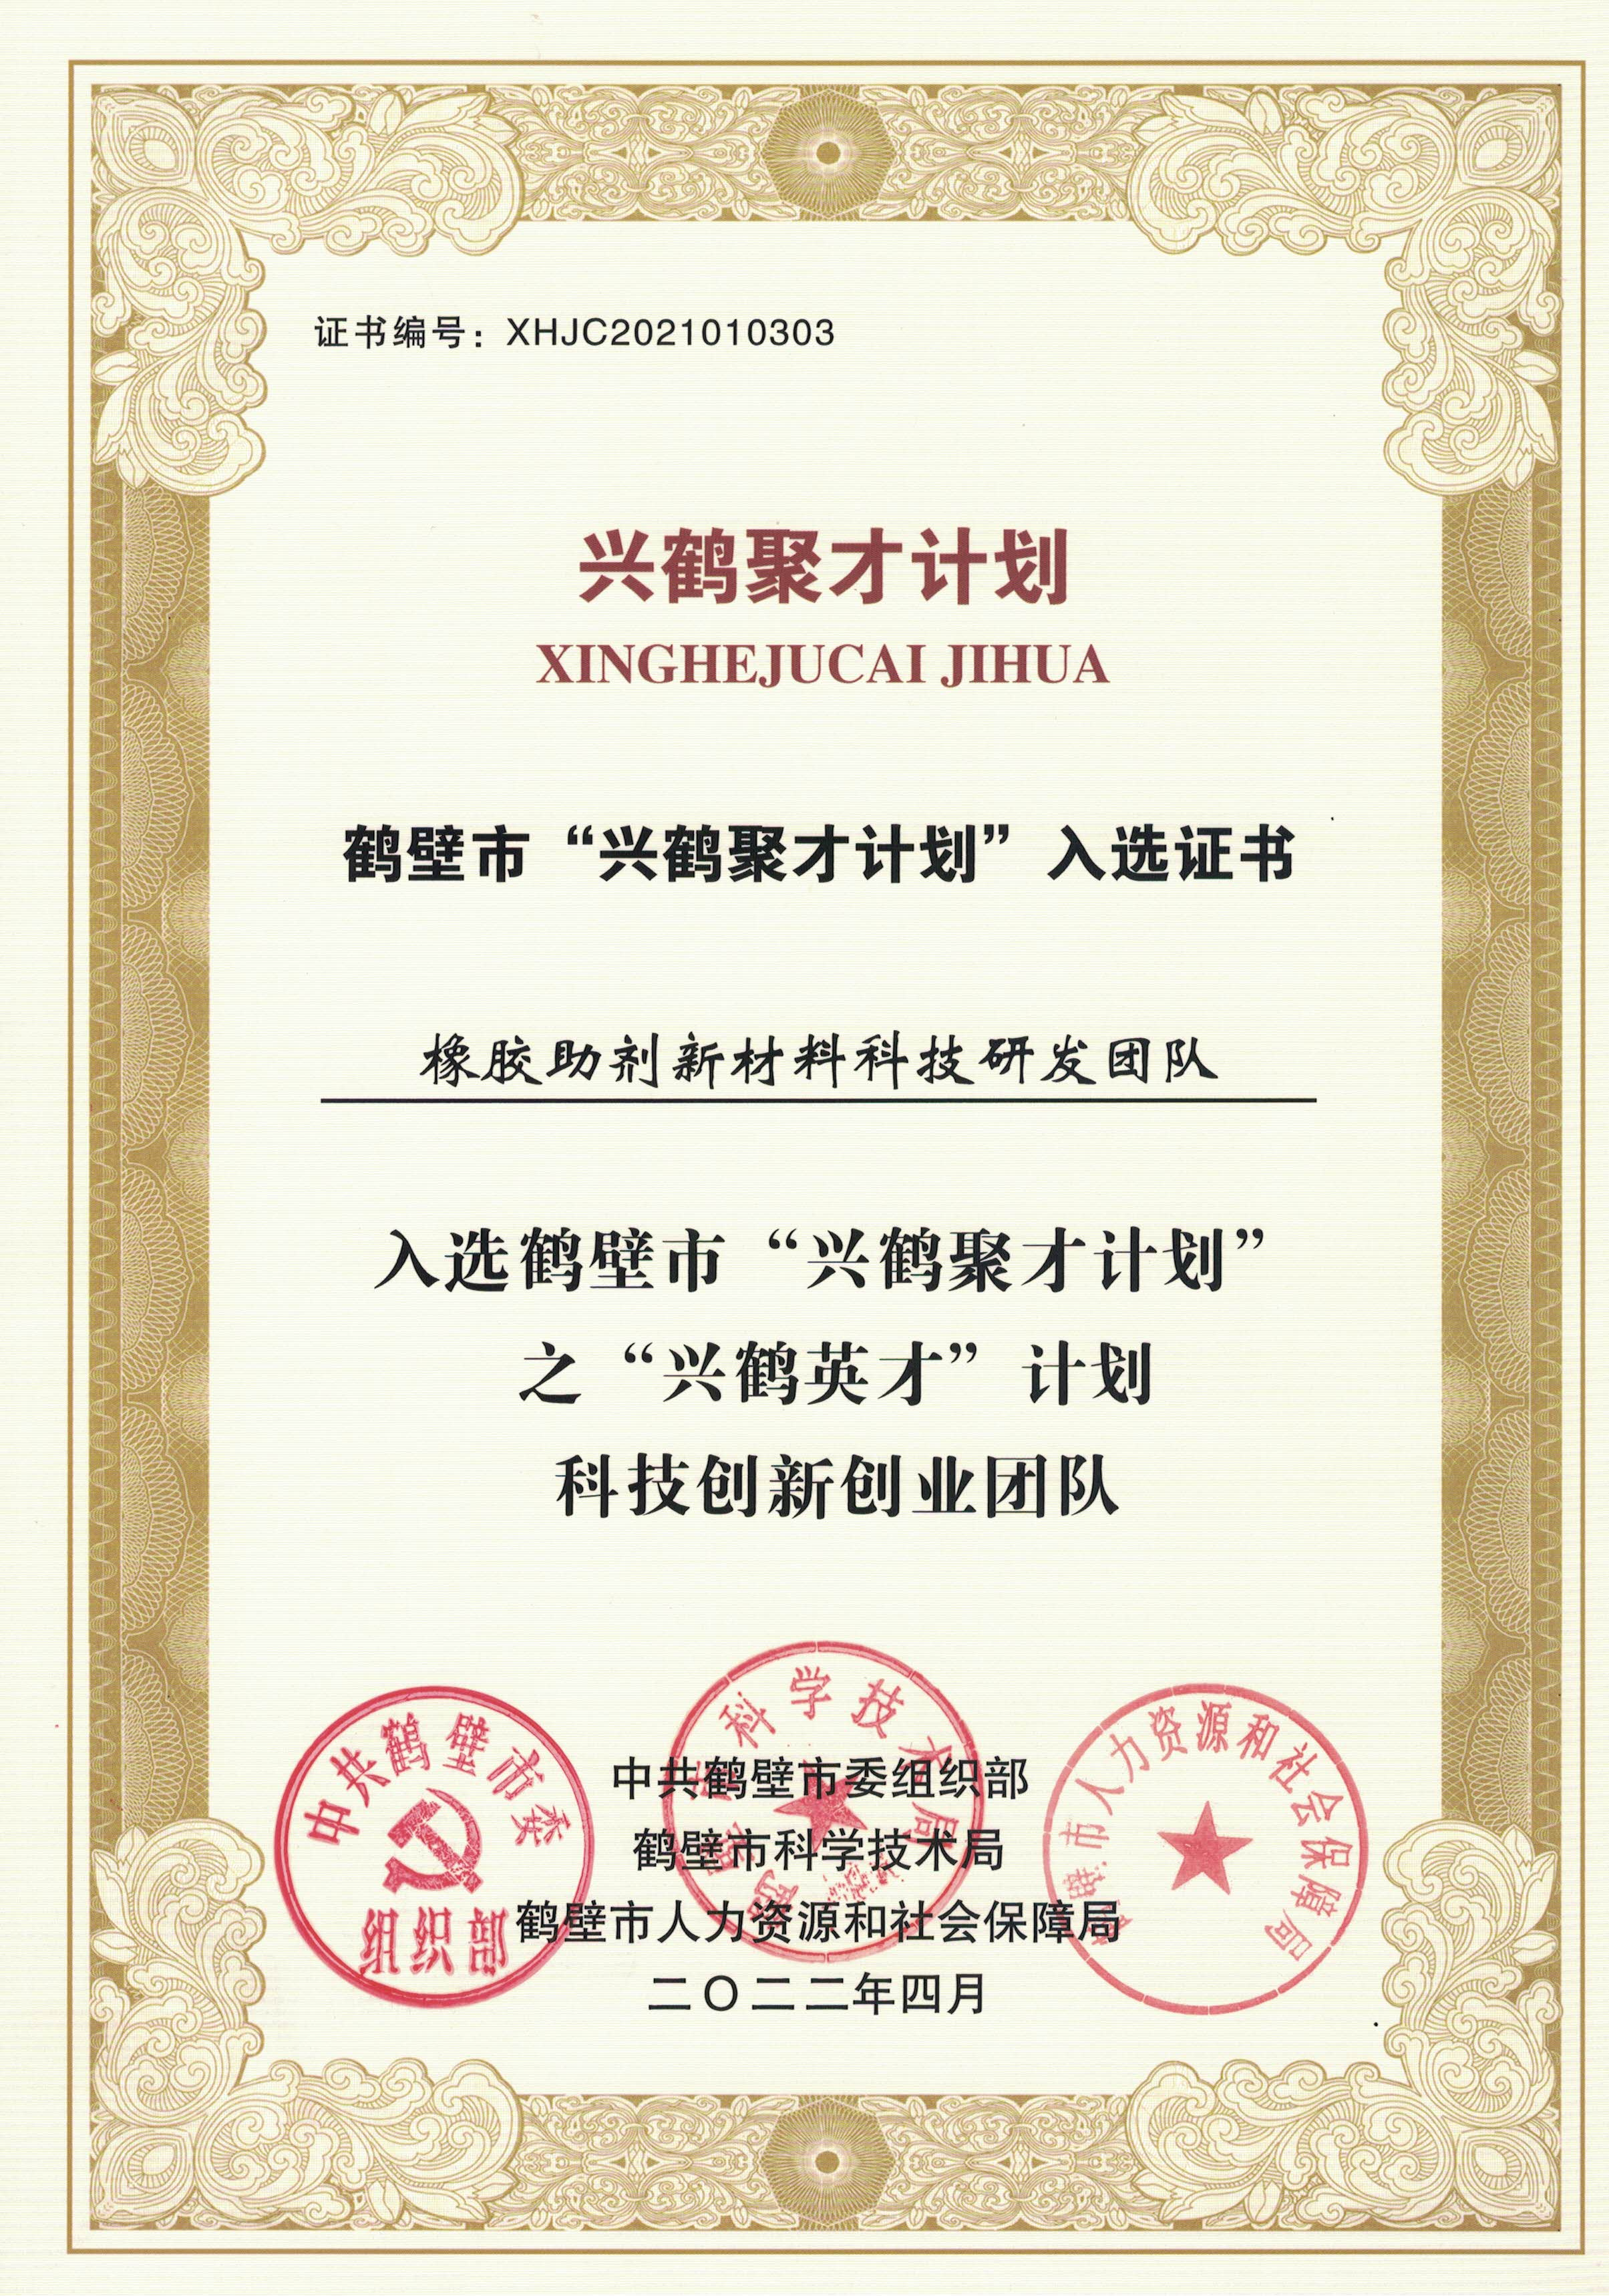 Good News | Uhoo Group Won Two Municipal Honors